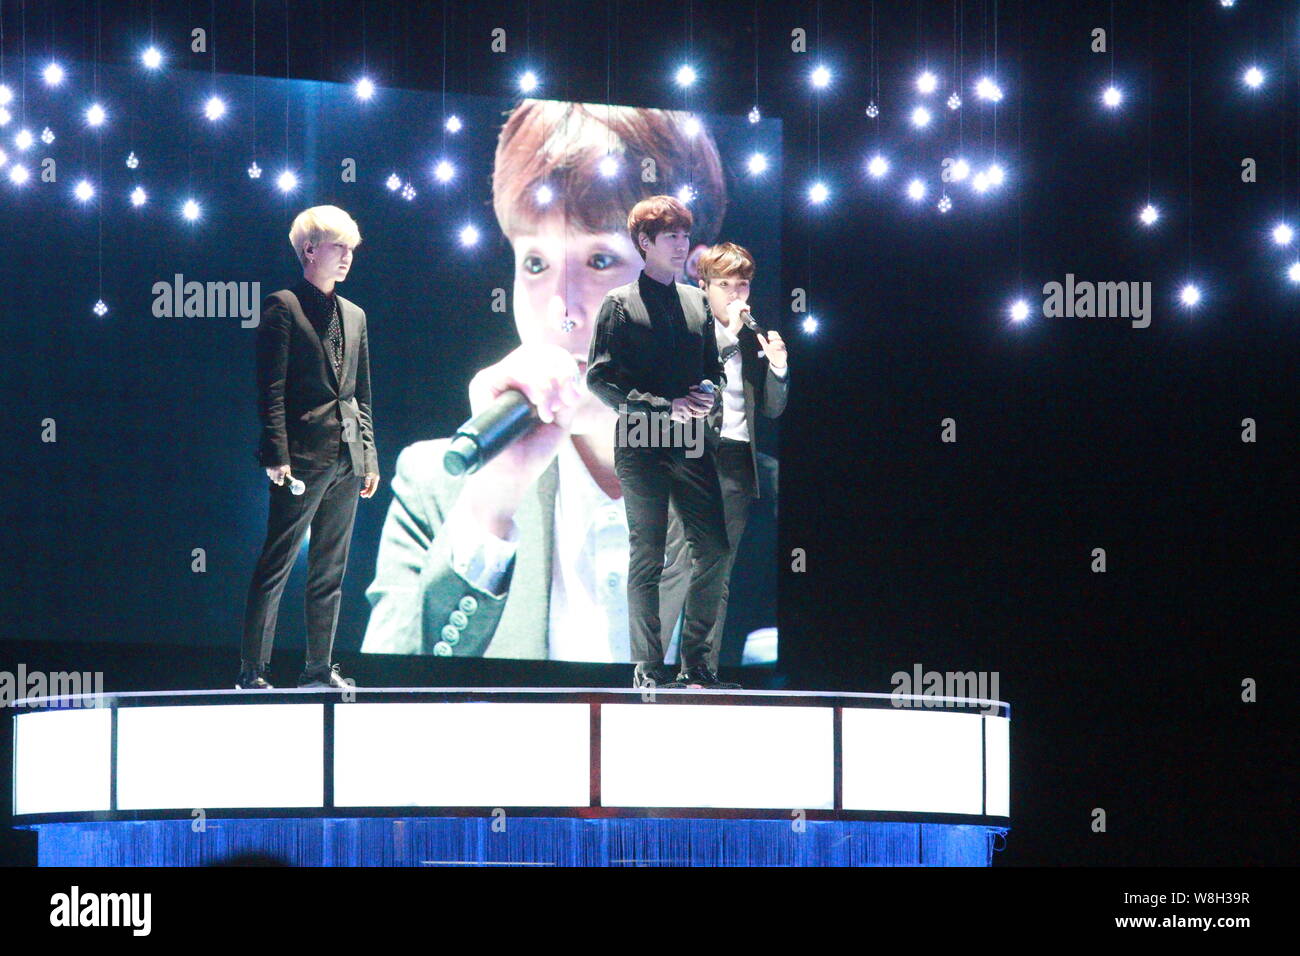 Membri del sud coreano di boy band Super Junior-K.R.Y. eseguire durante un concerto del loro tour in Asia a Hong Kong, Cina, 26 dicembre 2015. Foto Stock